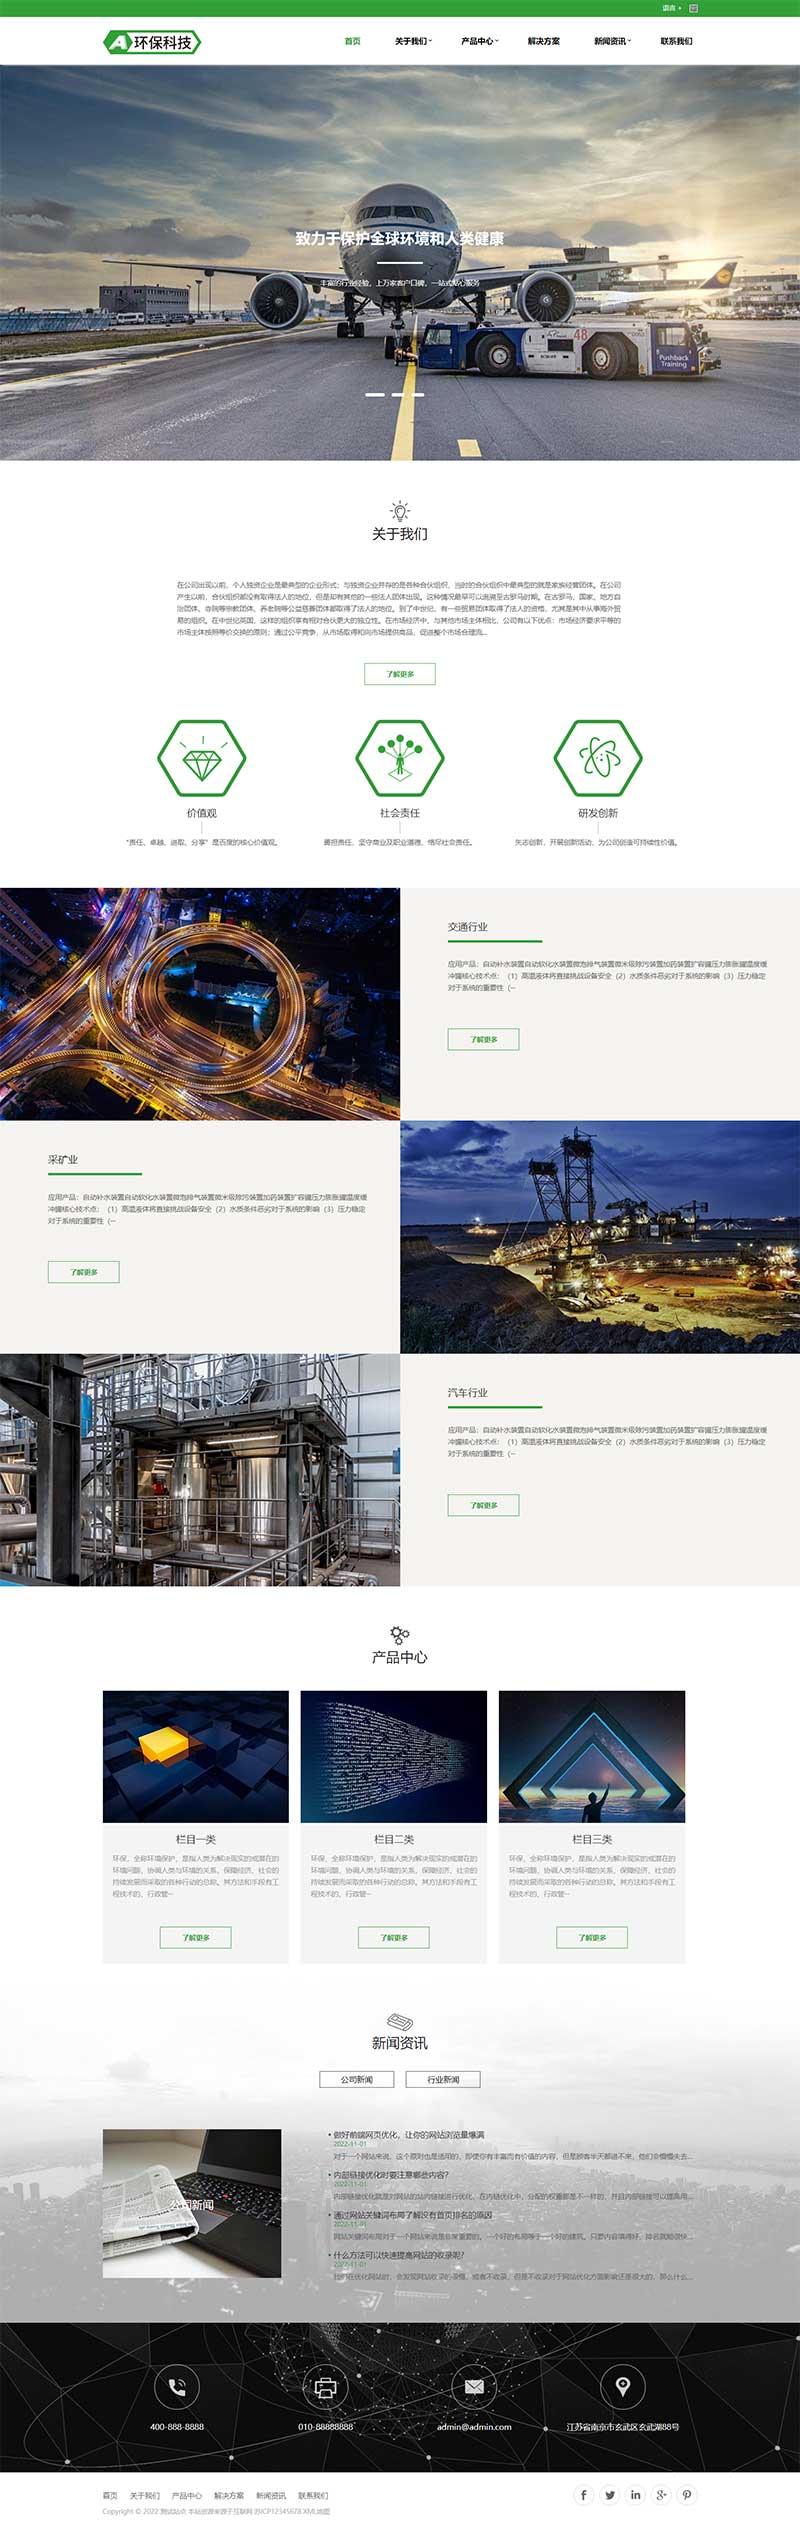 简繁体环保科技公司网站模板环保设备网站模板环保机械环保工程网站模板(图1)